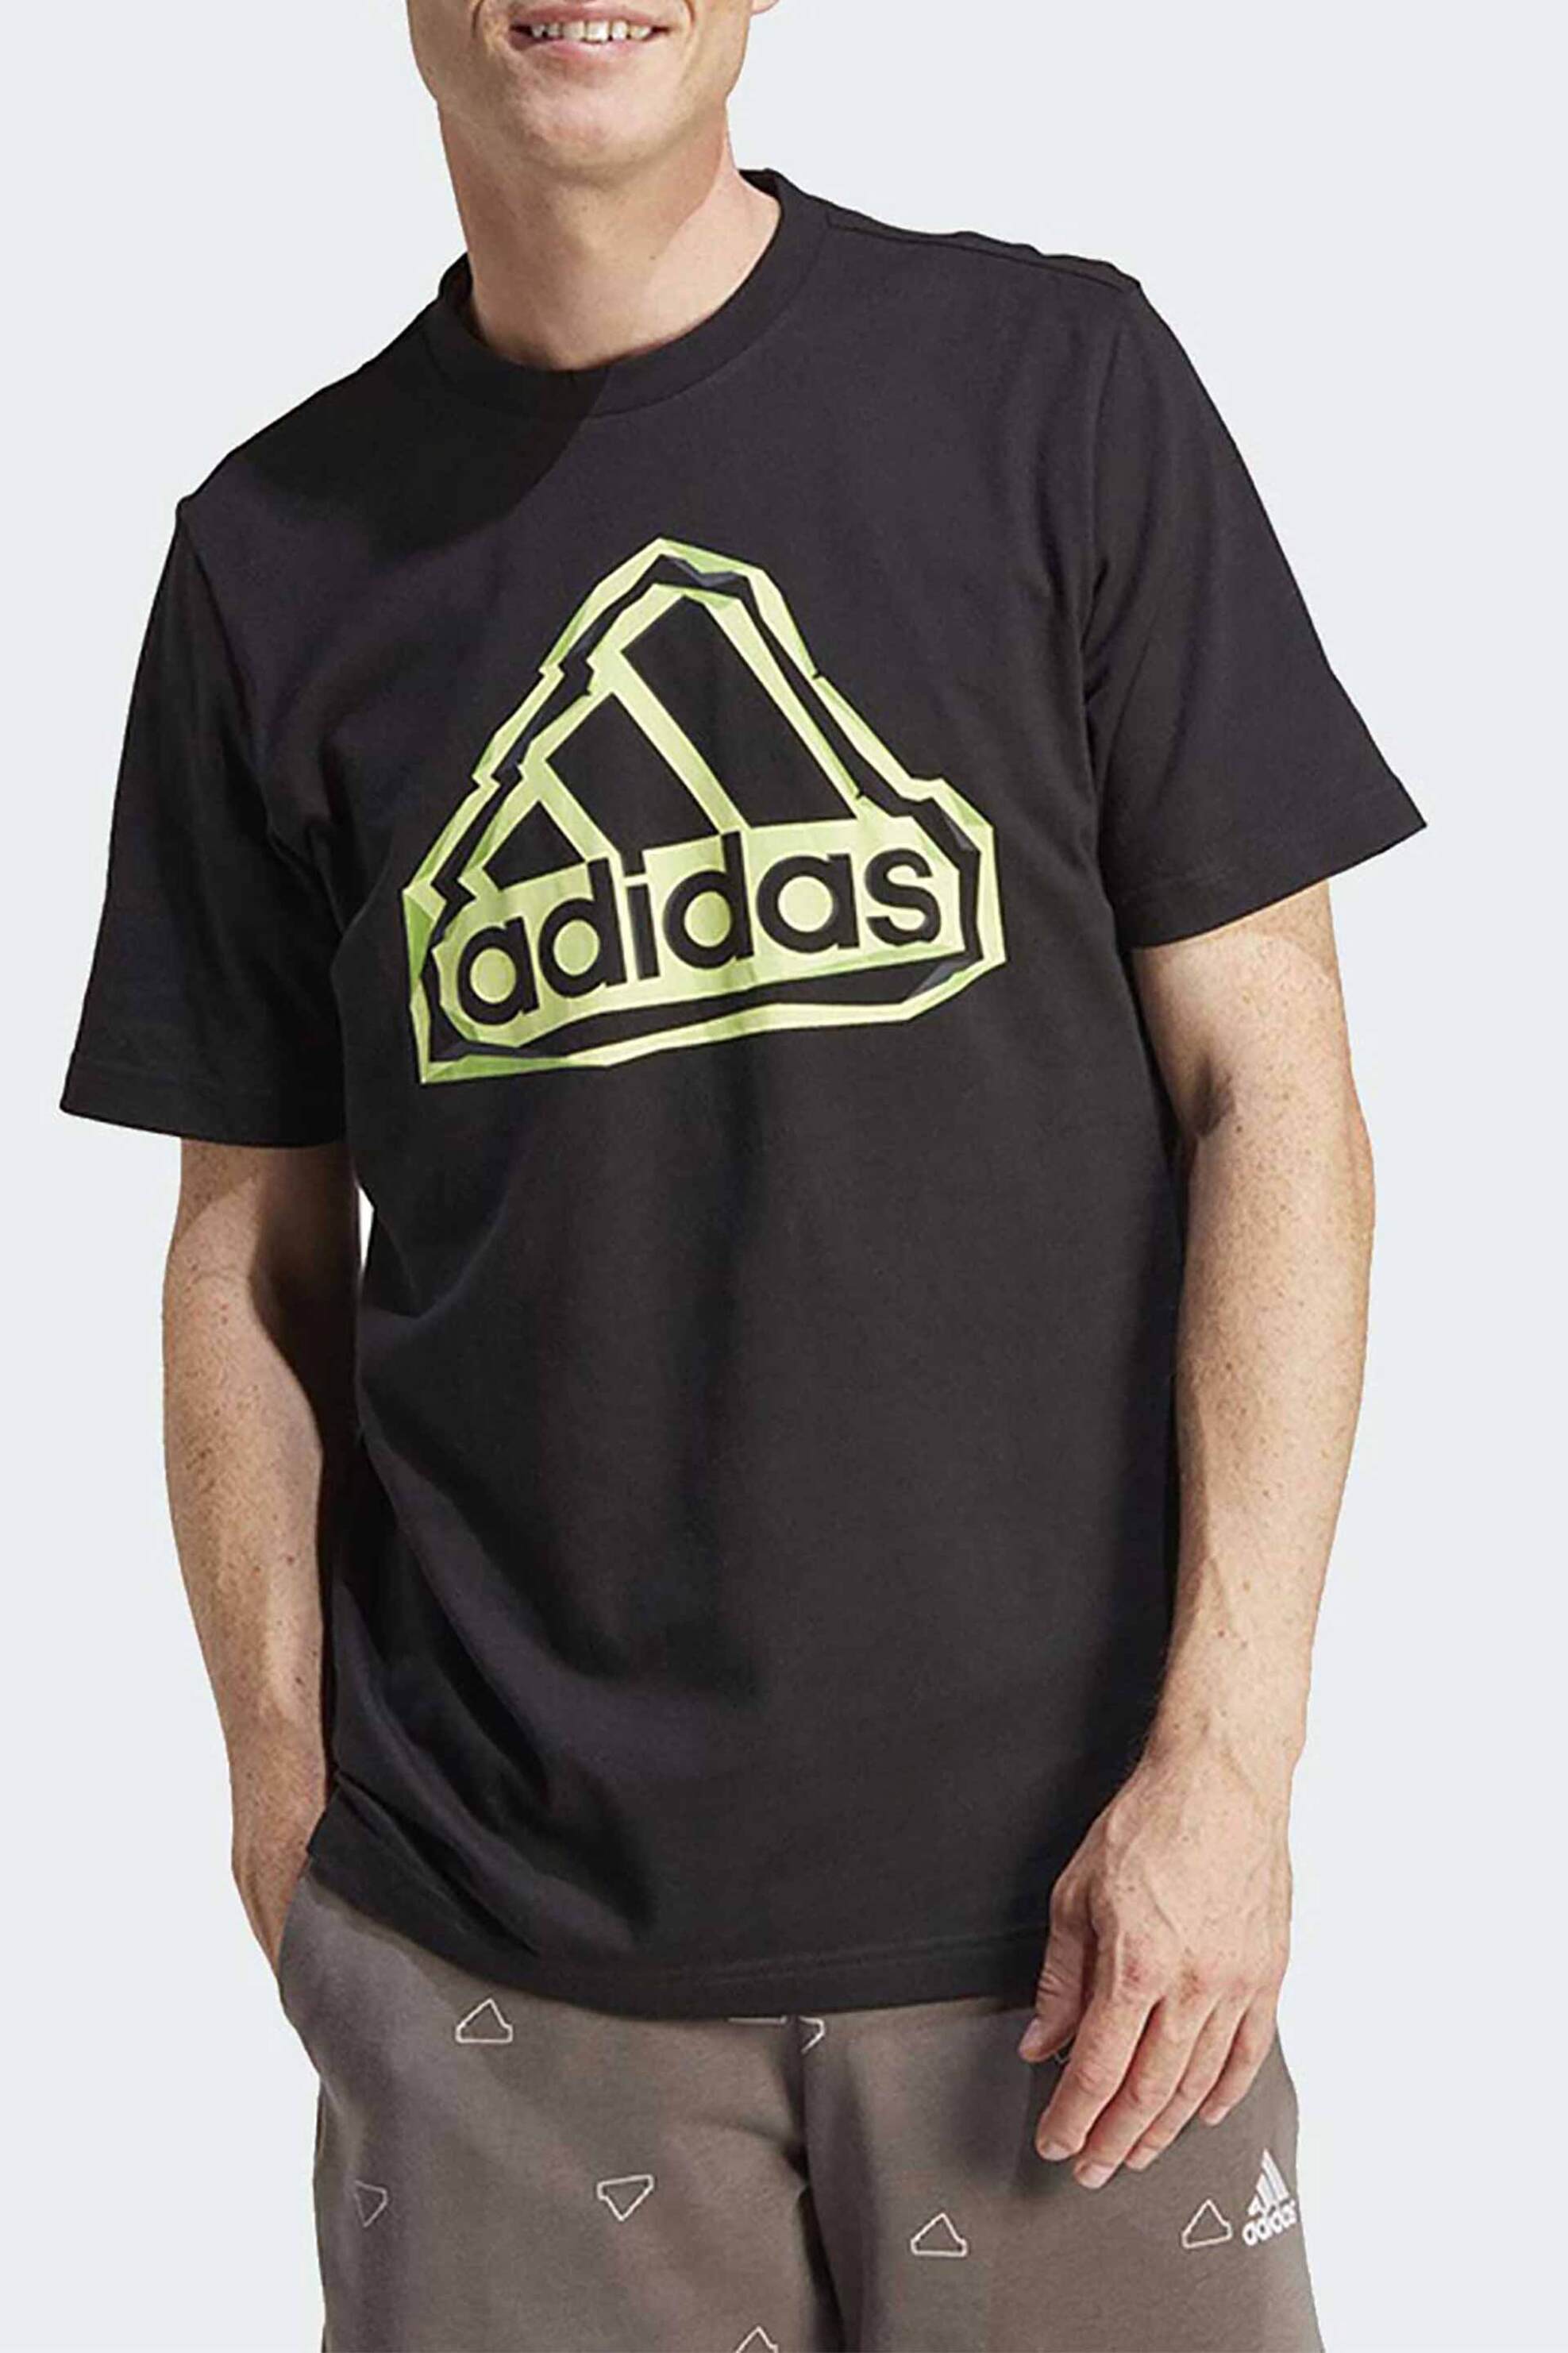 Ανδρική Μόδα > Ανδρικά Αθλητικά > Ανδρικά Αθλητικά Ρούχα > Αθλητικές Μπλούζες > Ανδρικά Αθλητικά T-Shirts Adidas ανδρικό T-shirt με contrast logo στο στήθος - IM8300 Μαύρο